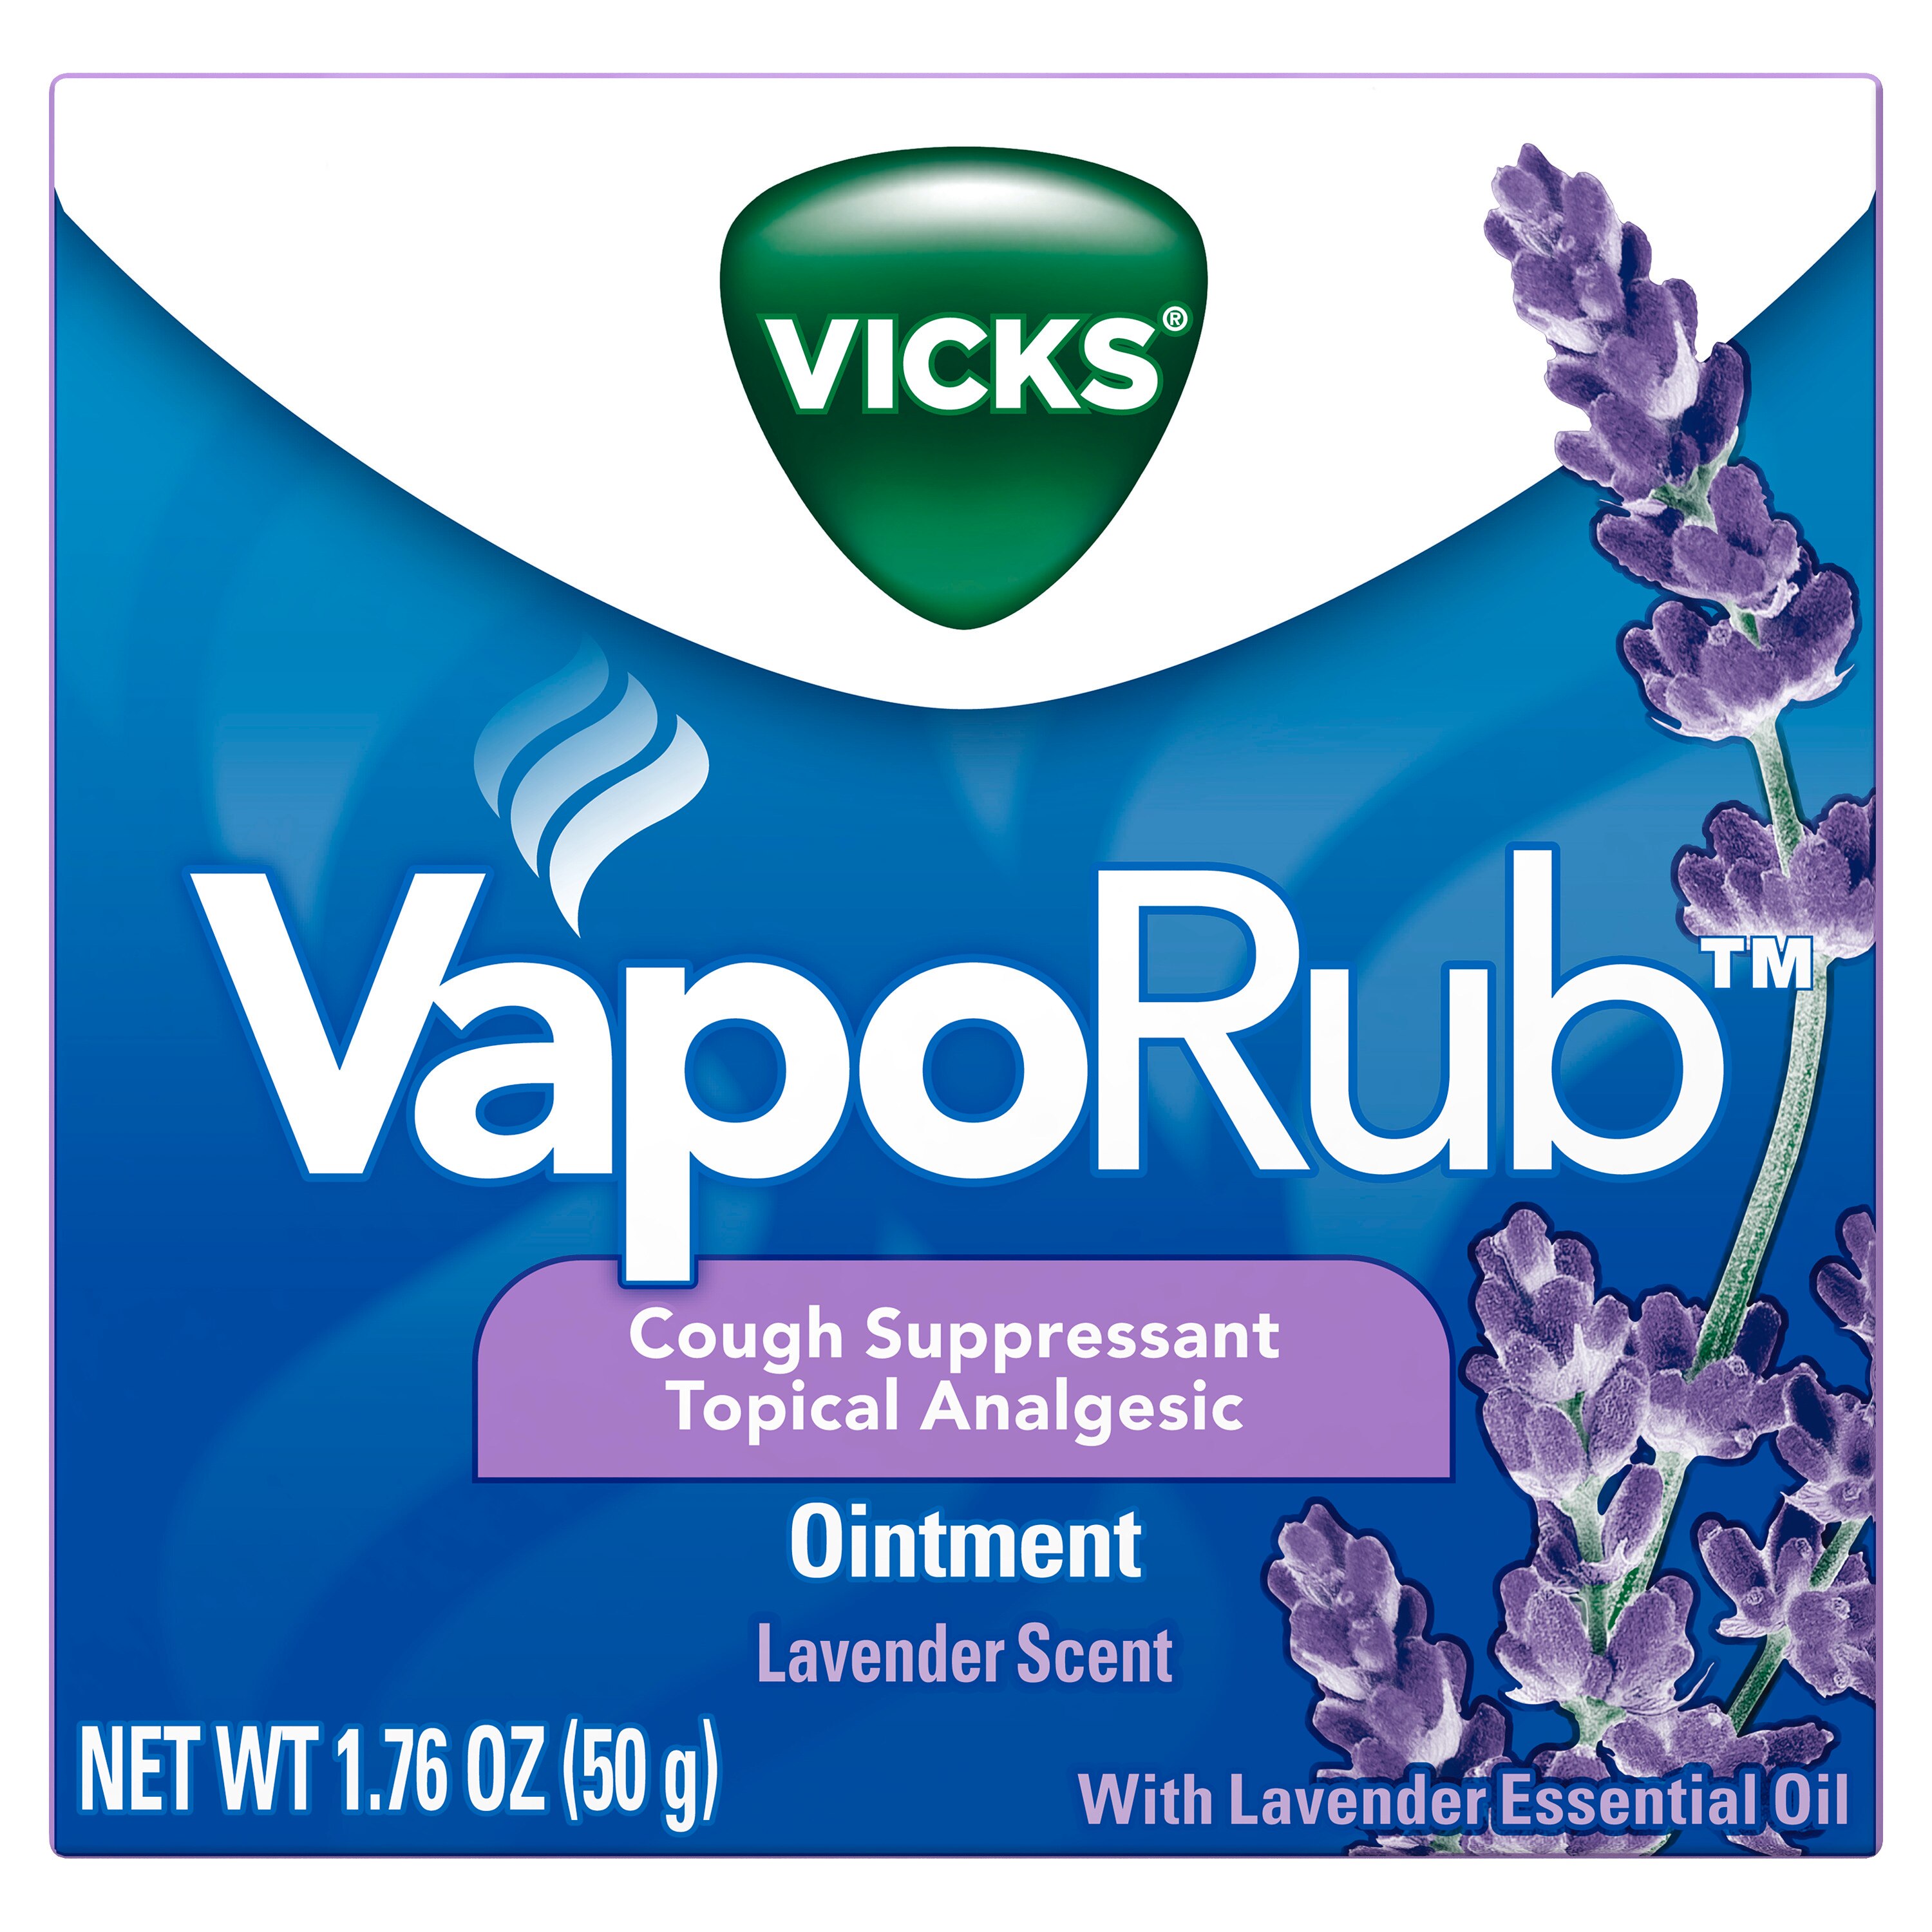 Vicks VapoRub - Ungüento pectoral para el alivio de la tos, resfrío y dolores, fragancia Lavender, 1.76 oz